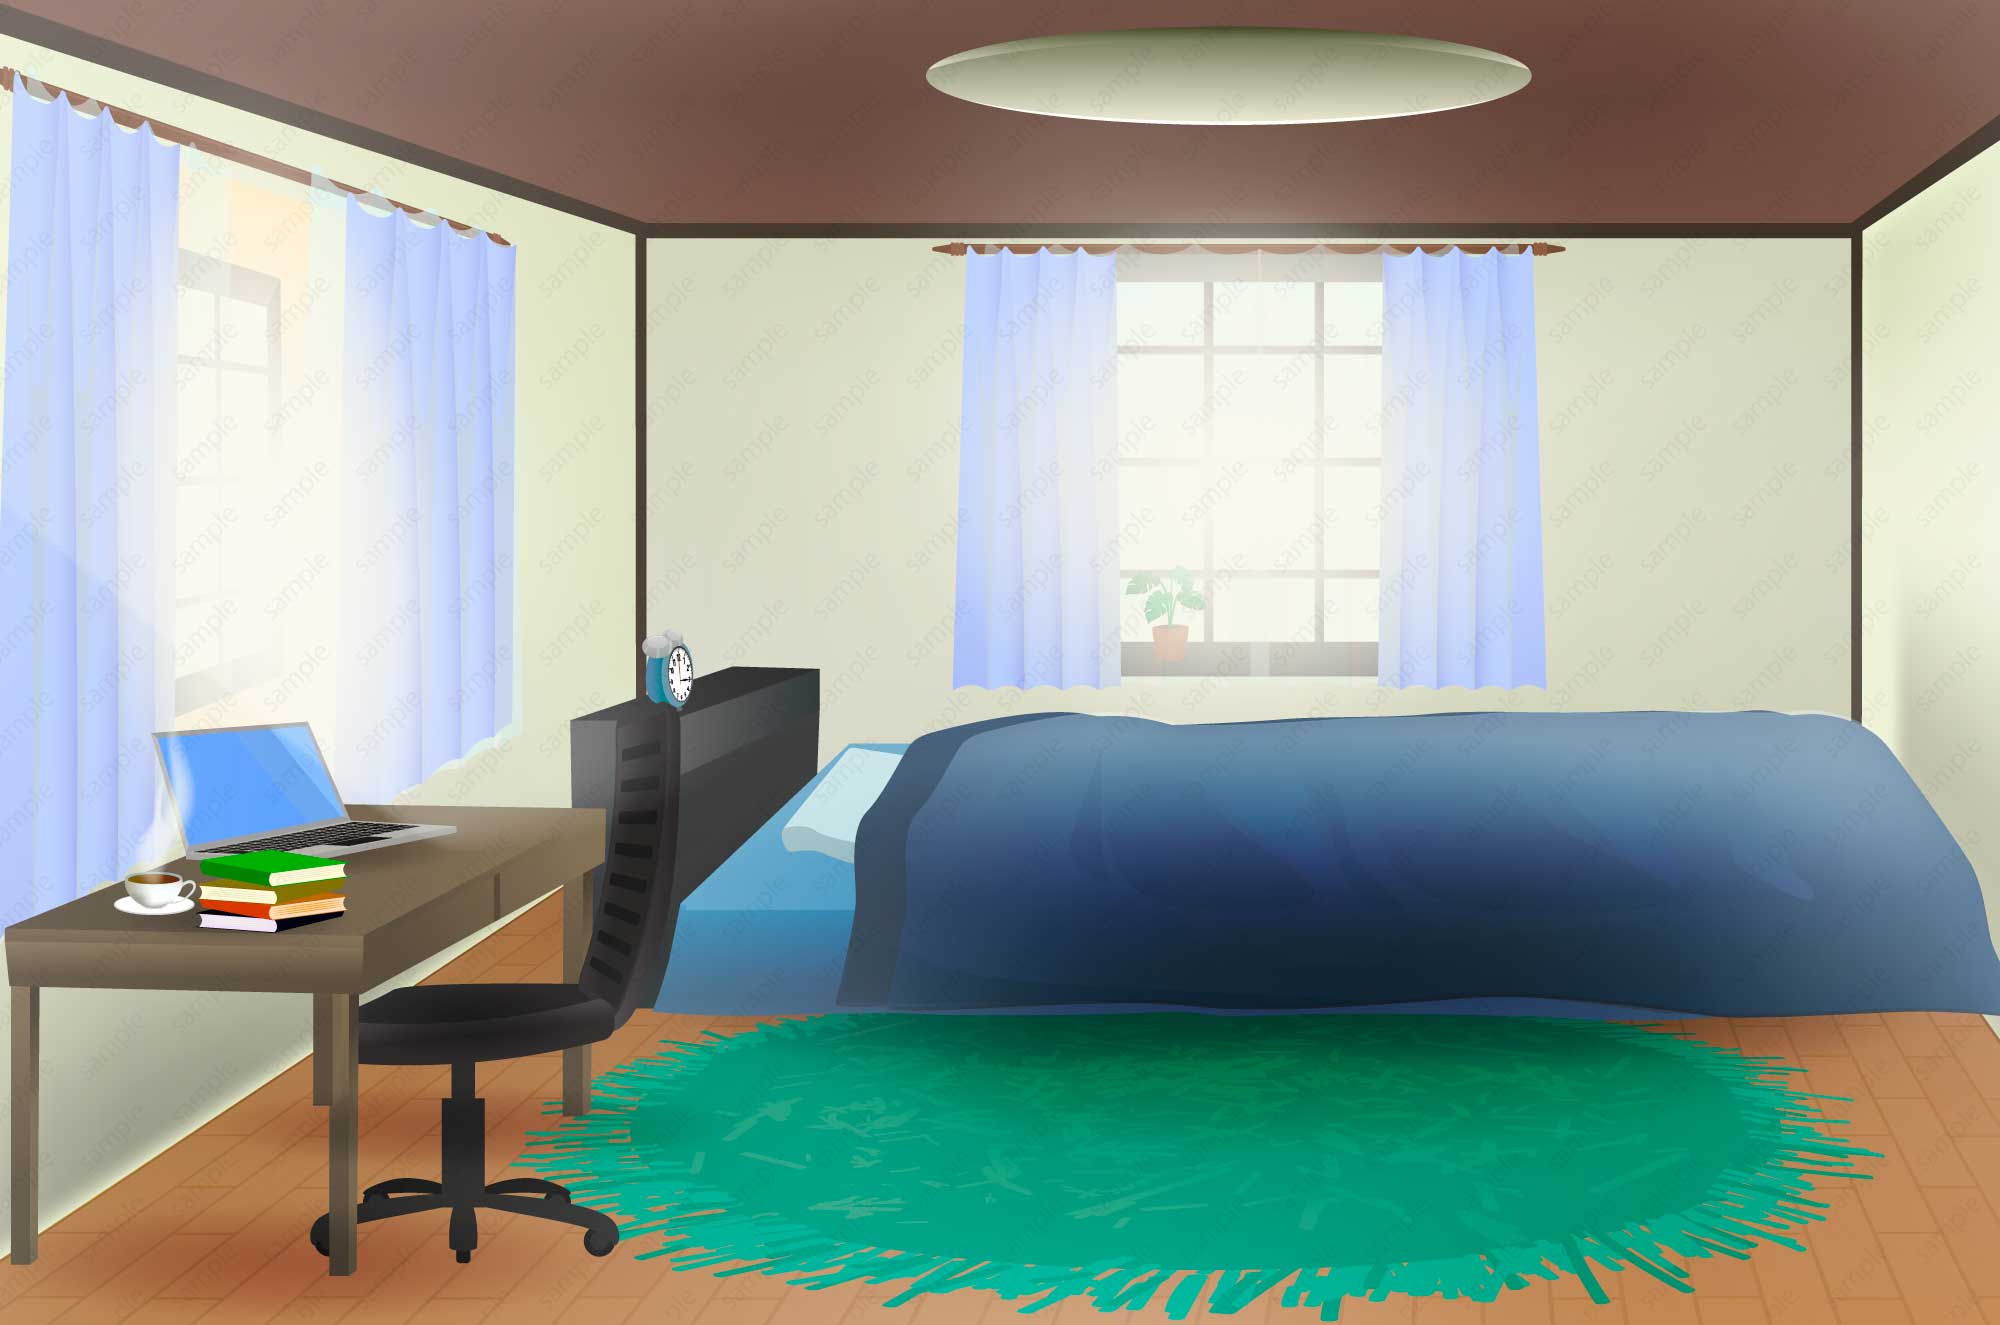 シンプルな部屋のイラスト素材 朝 昼 夜の部屋背景 チコデザ